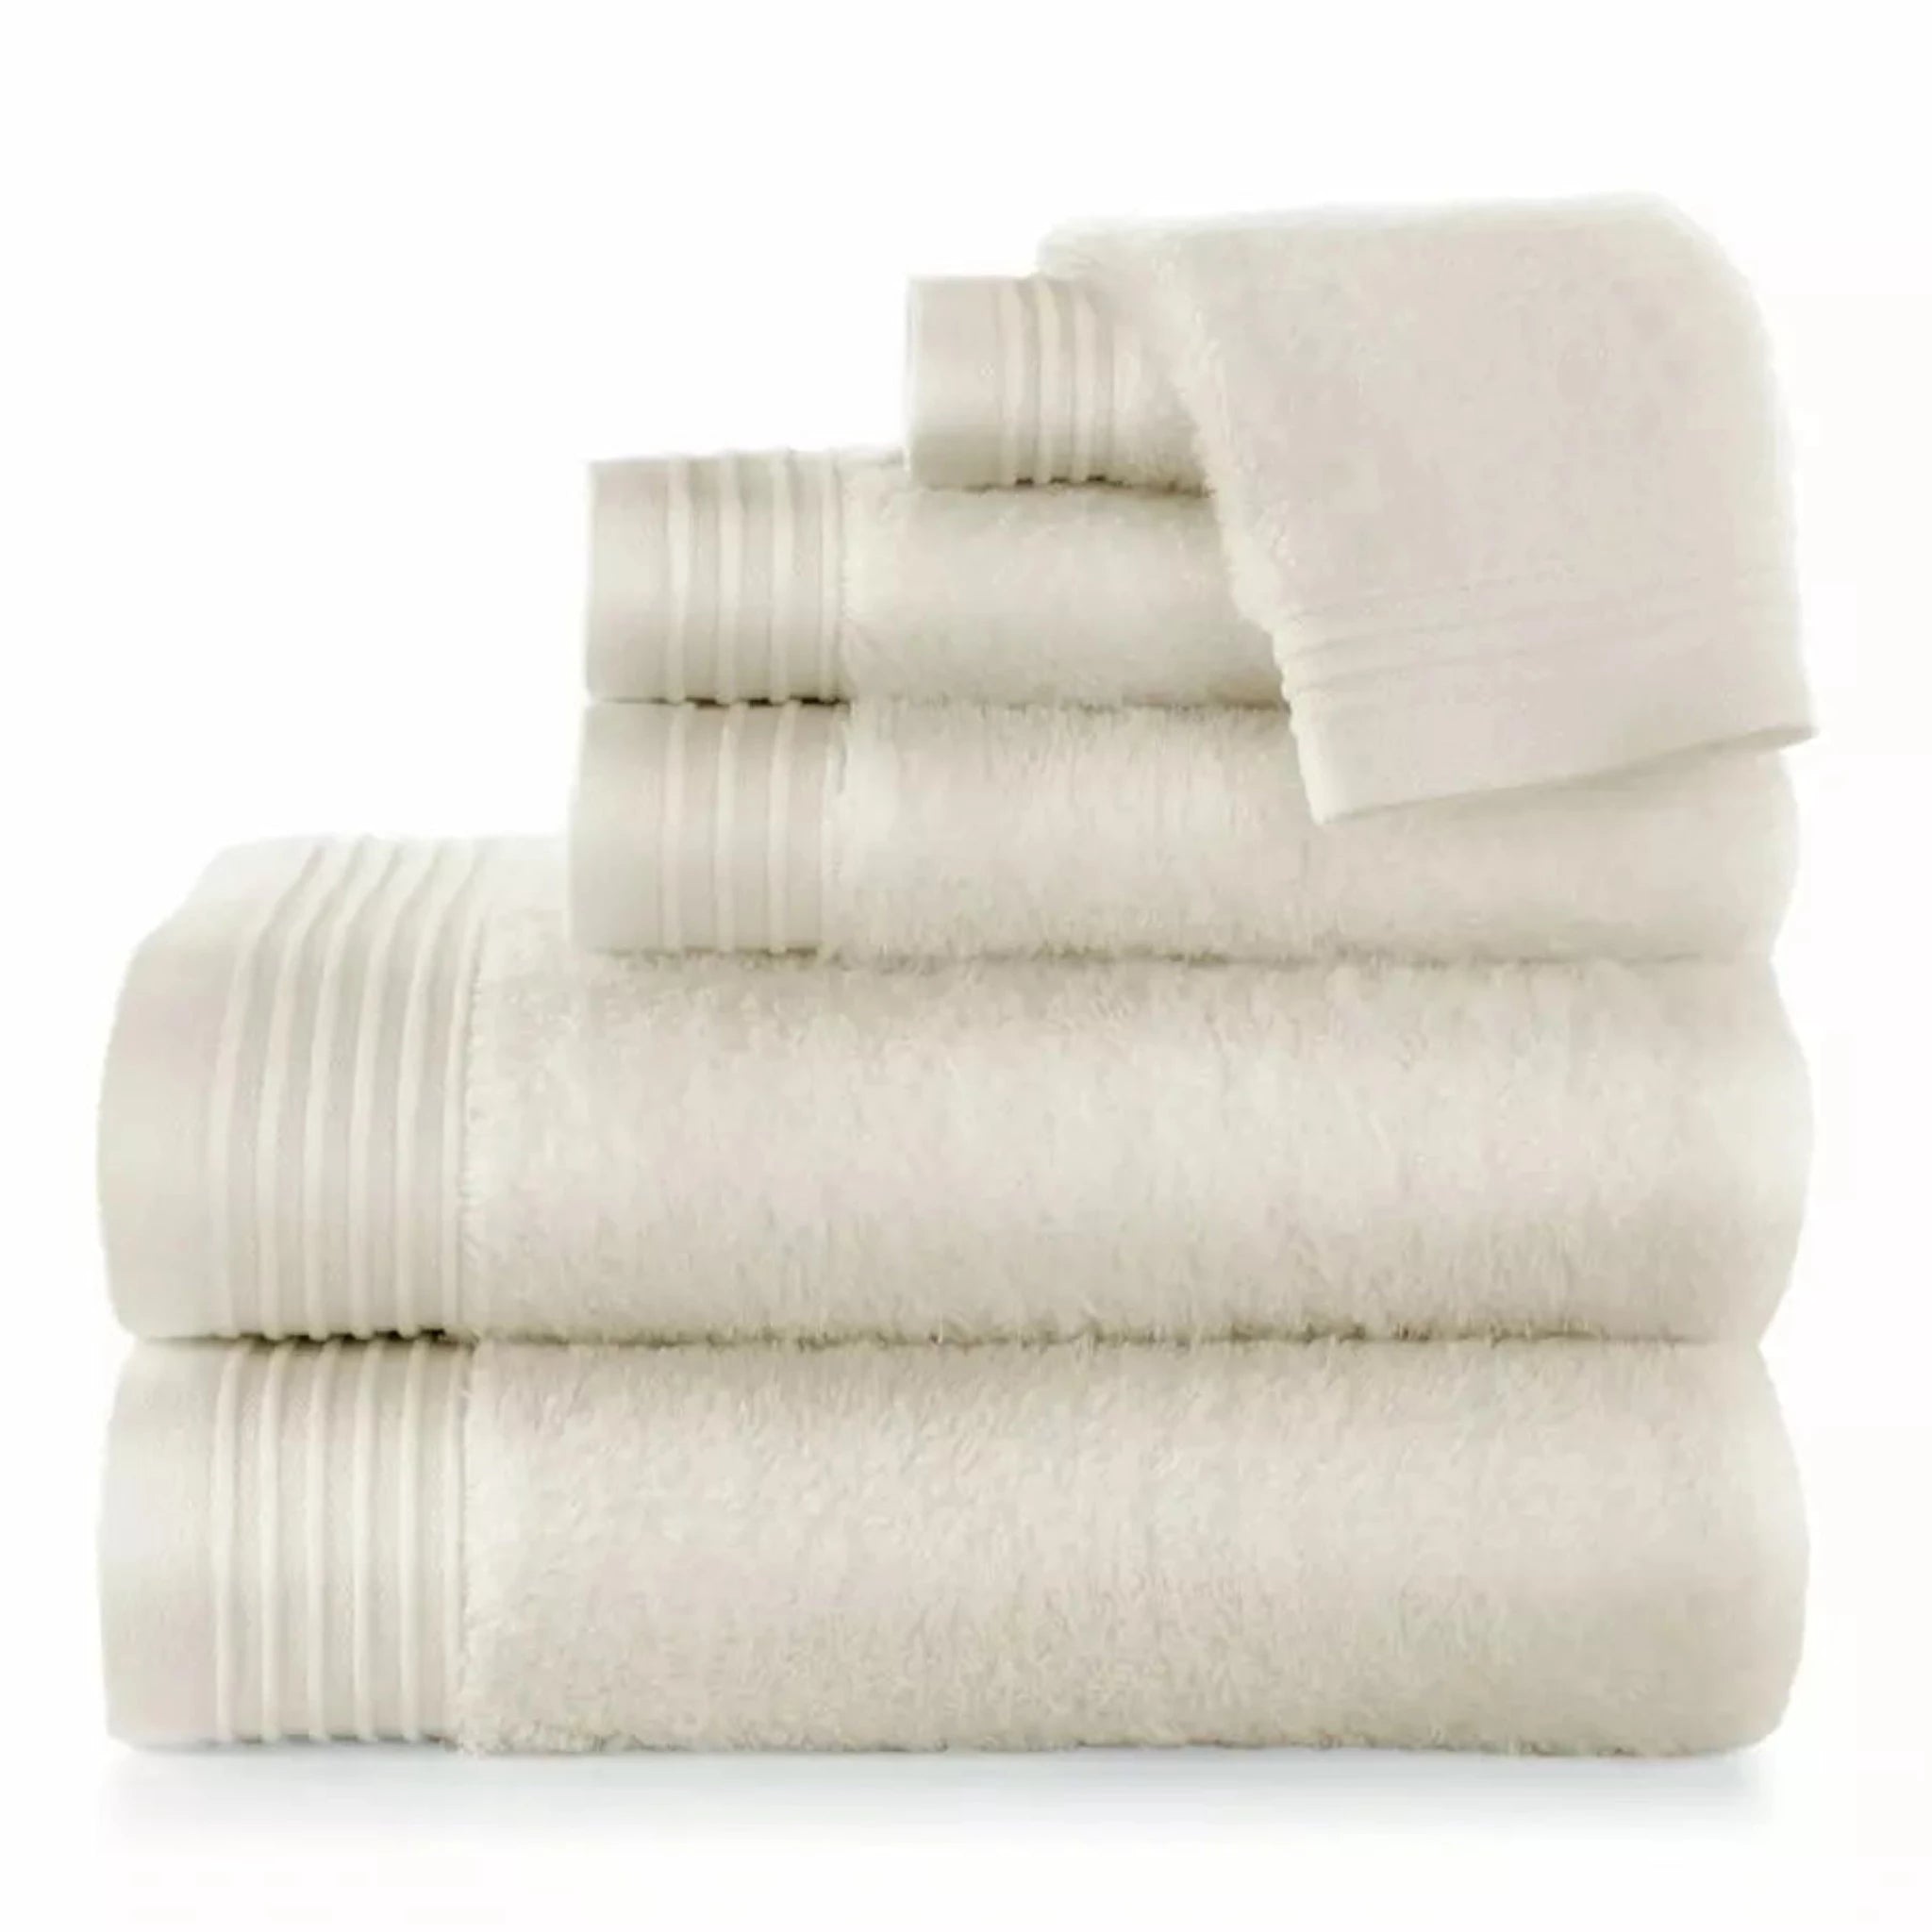 https://flandb.com/cdn/shop/products/Peacock-Alley-Bamboo-Bath-Towels-Main-Linen.webp?v=1667464696